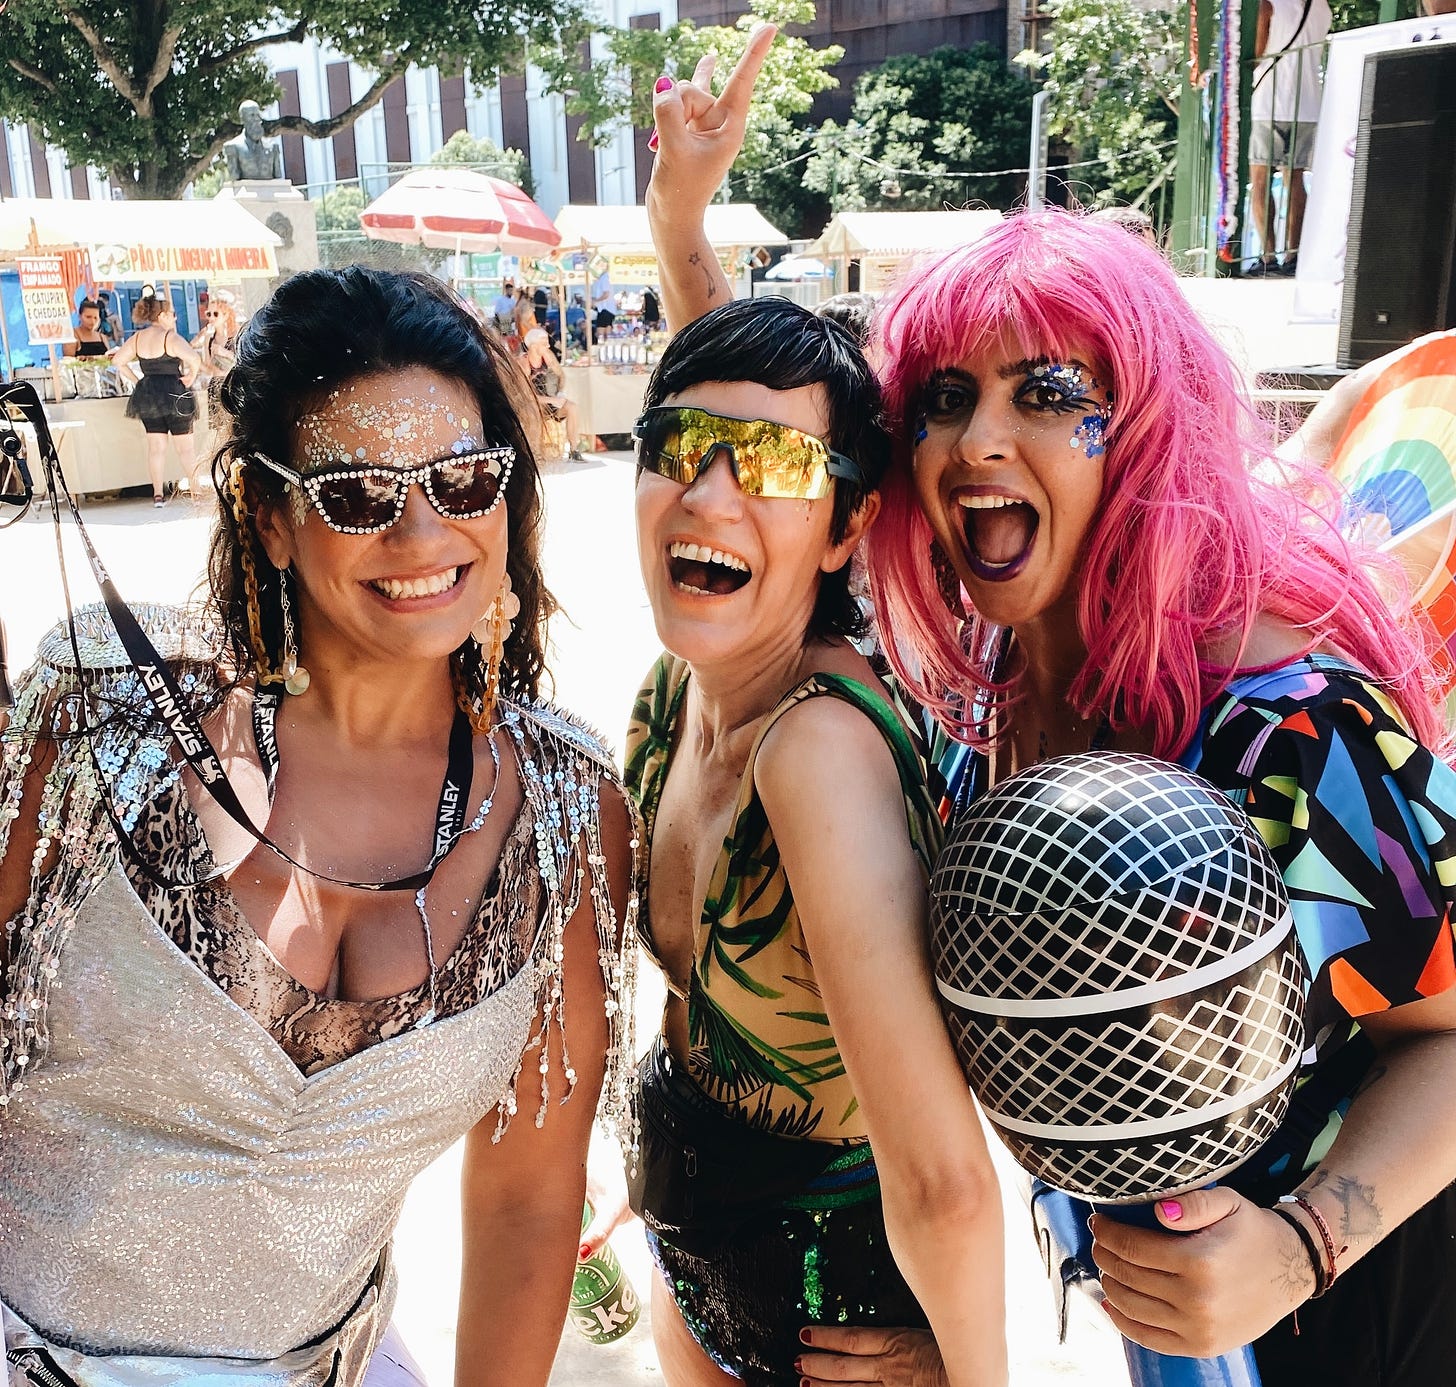 Tres mulheres morenas, uma delas com cabelos longos cor-de-rosa segura um microfone gigante de plástico. Estão maquiadas com glitter e duas estão de óculos escuros. 